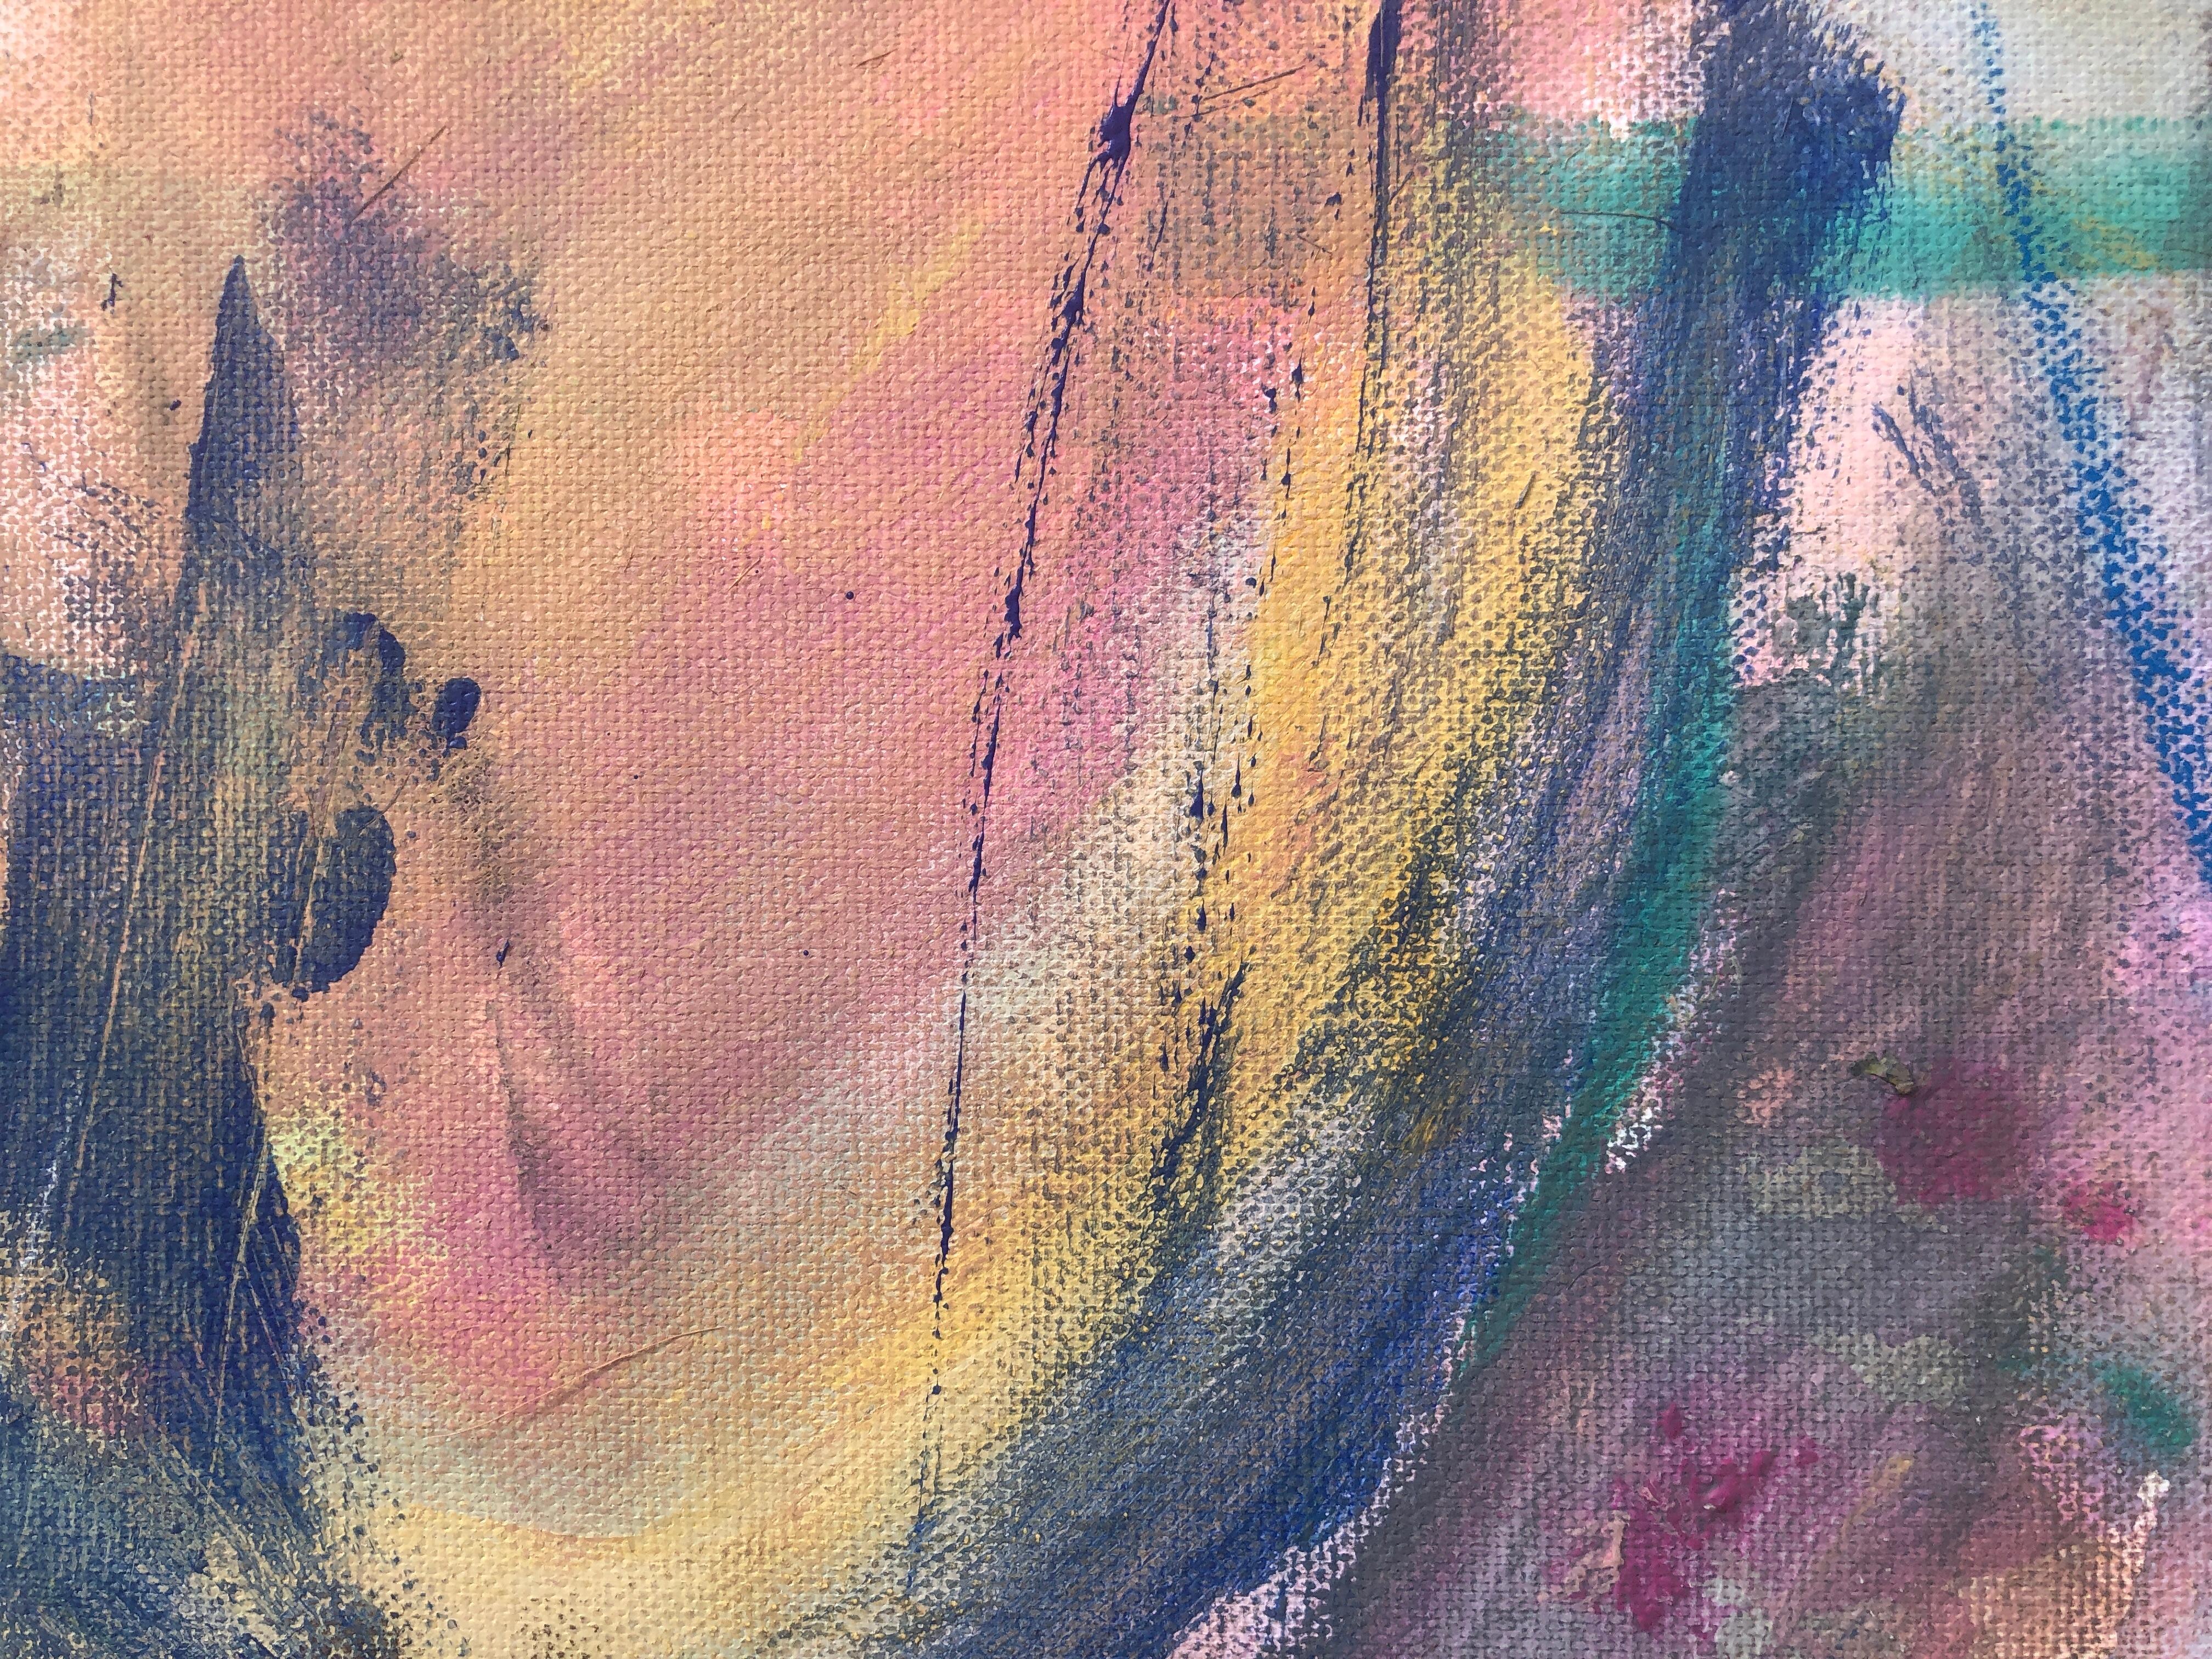 Alle meine Liebhaber Öl auf Leinwand Gemälde abstrakter Expressionismus (Abstrakter Expressionismus), Painting, von Nerea Caos